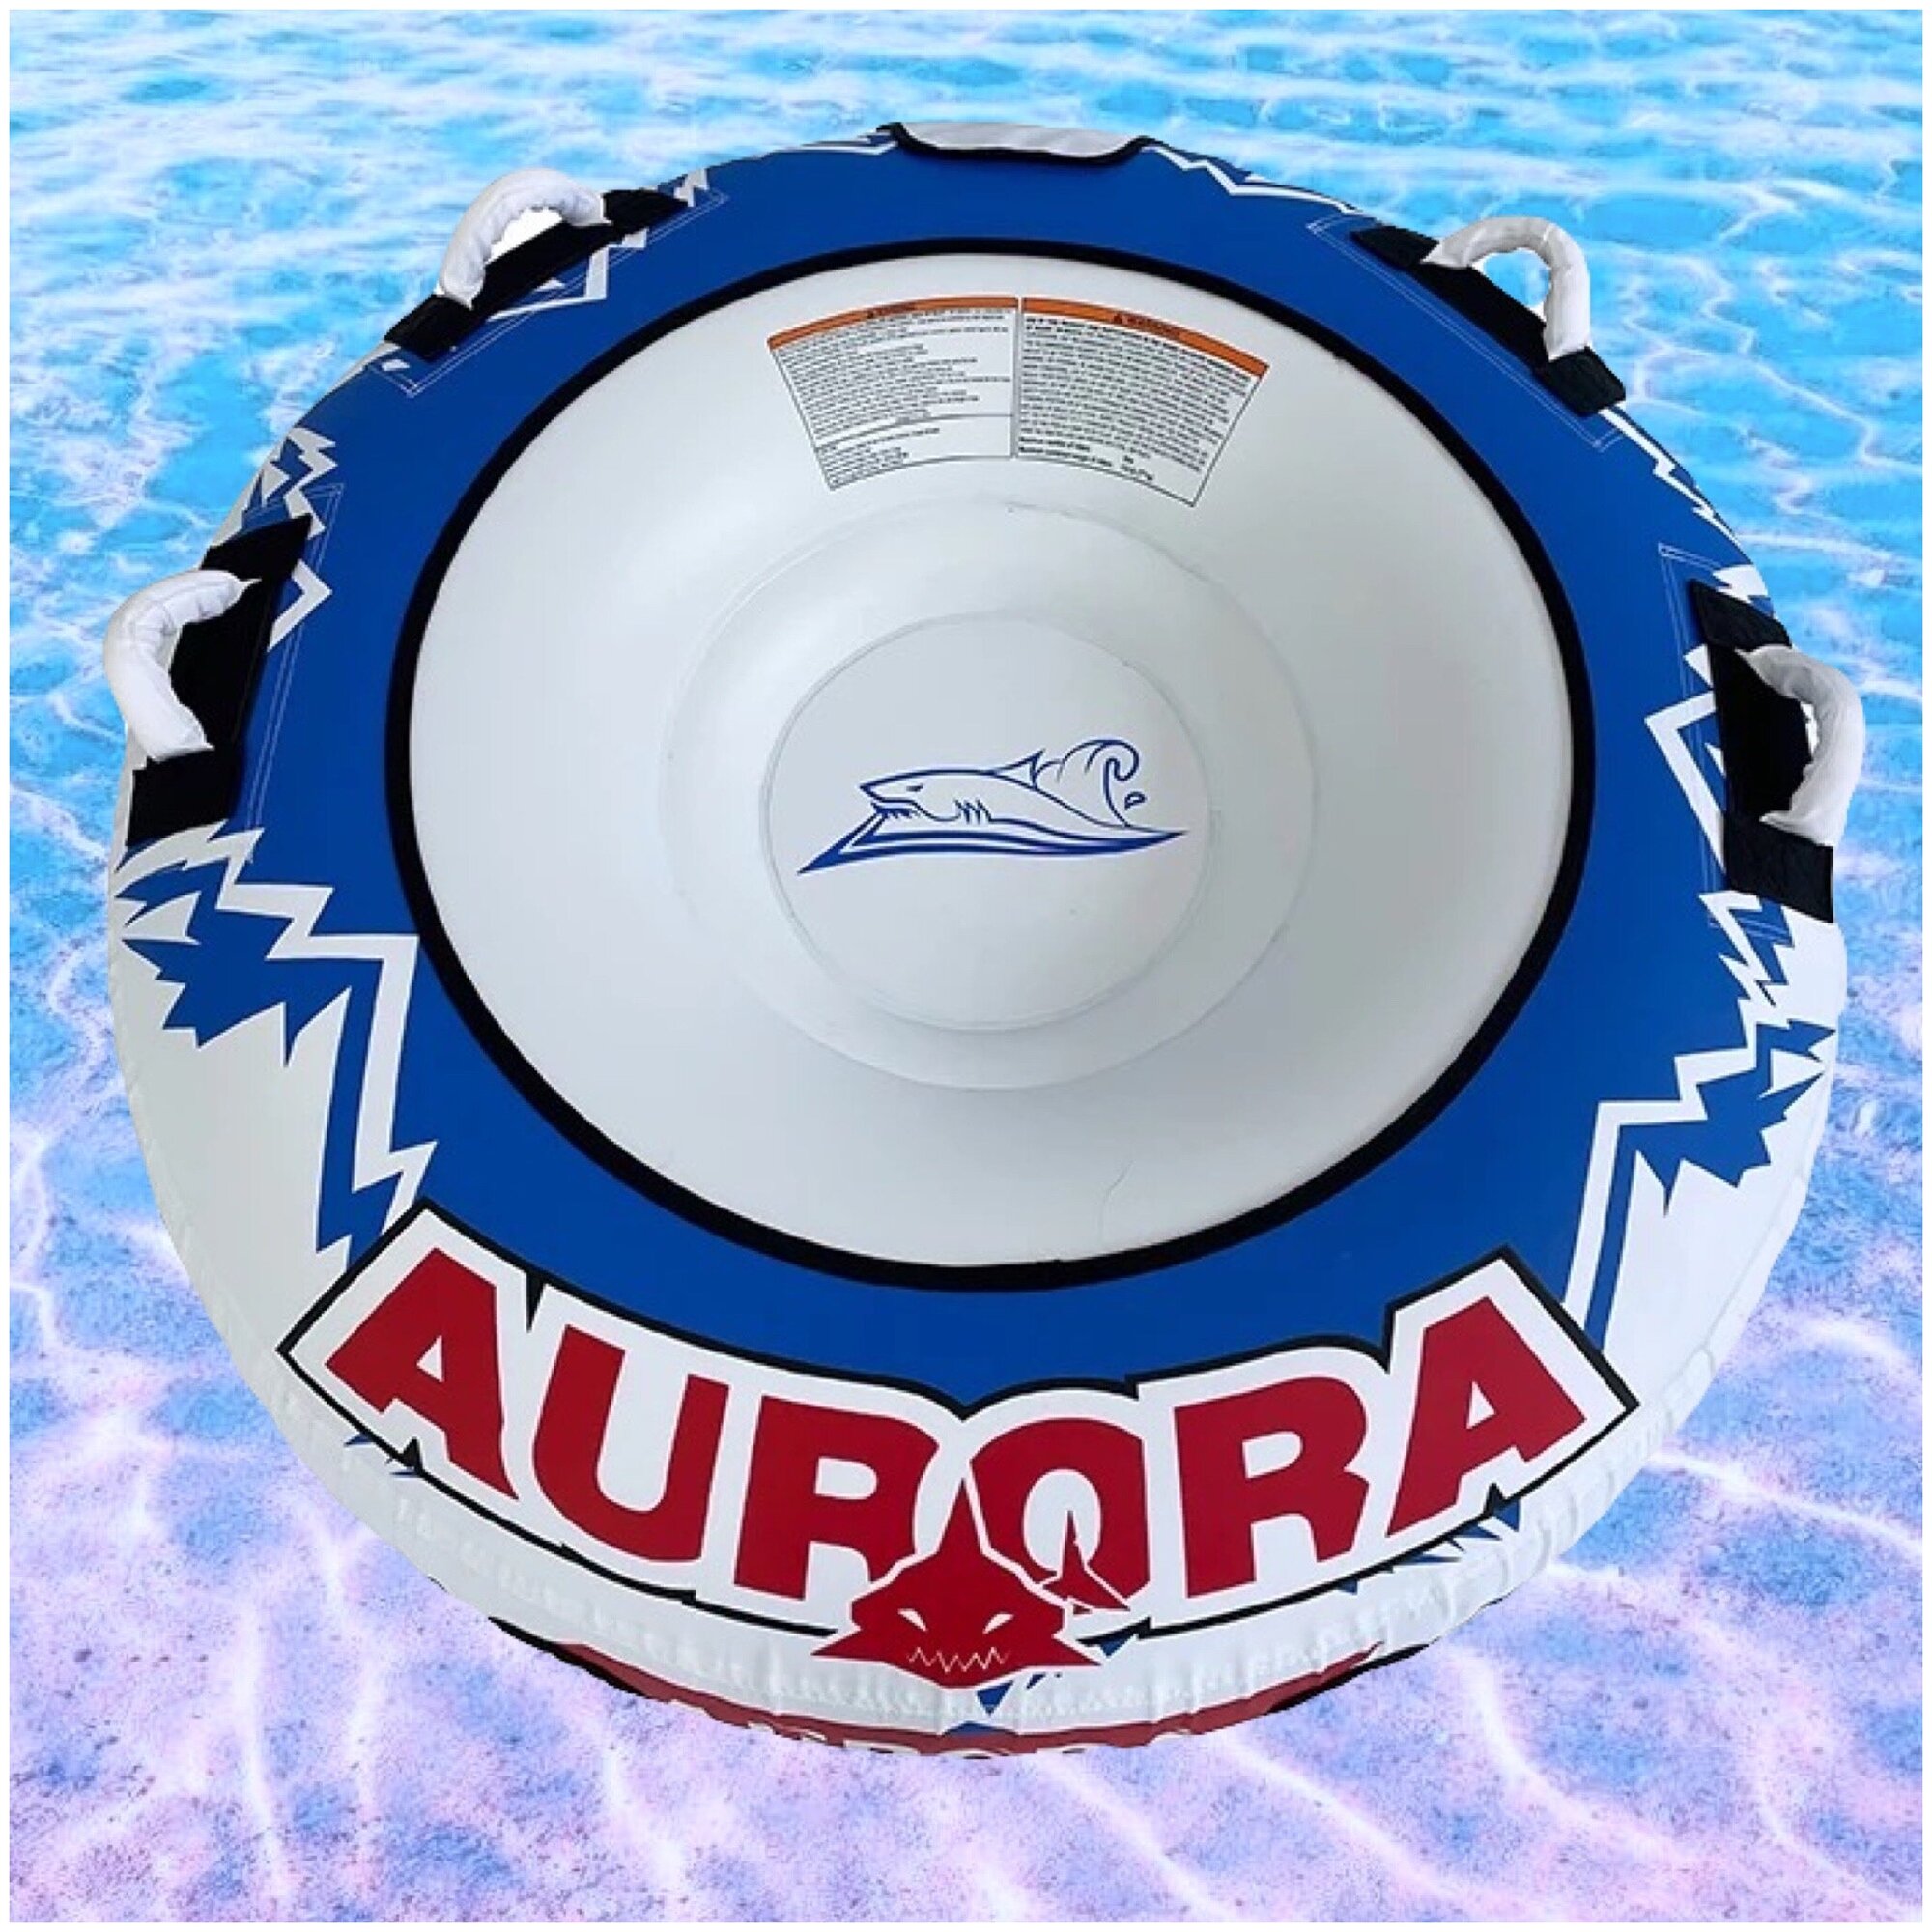 Баллон буксируемый одноместный водная ватрушка для буксировки за катером на воде Aurora.